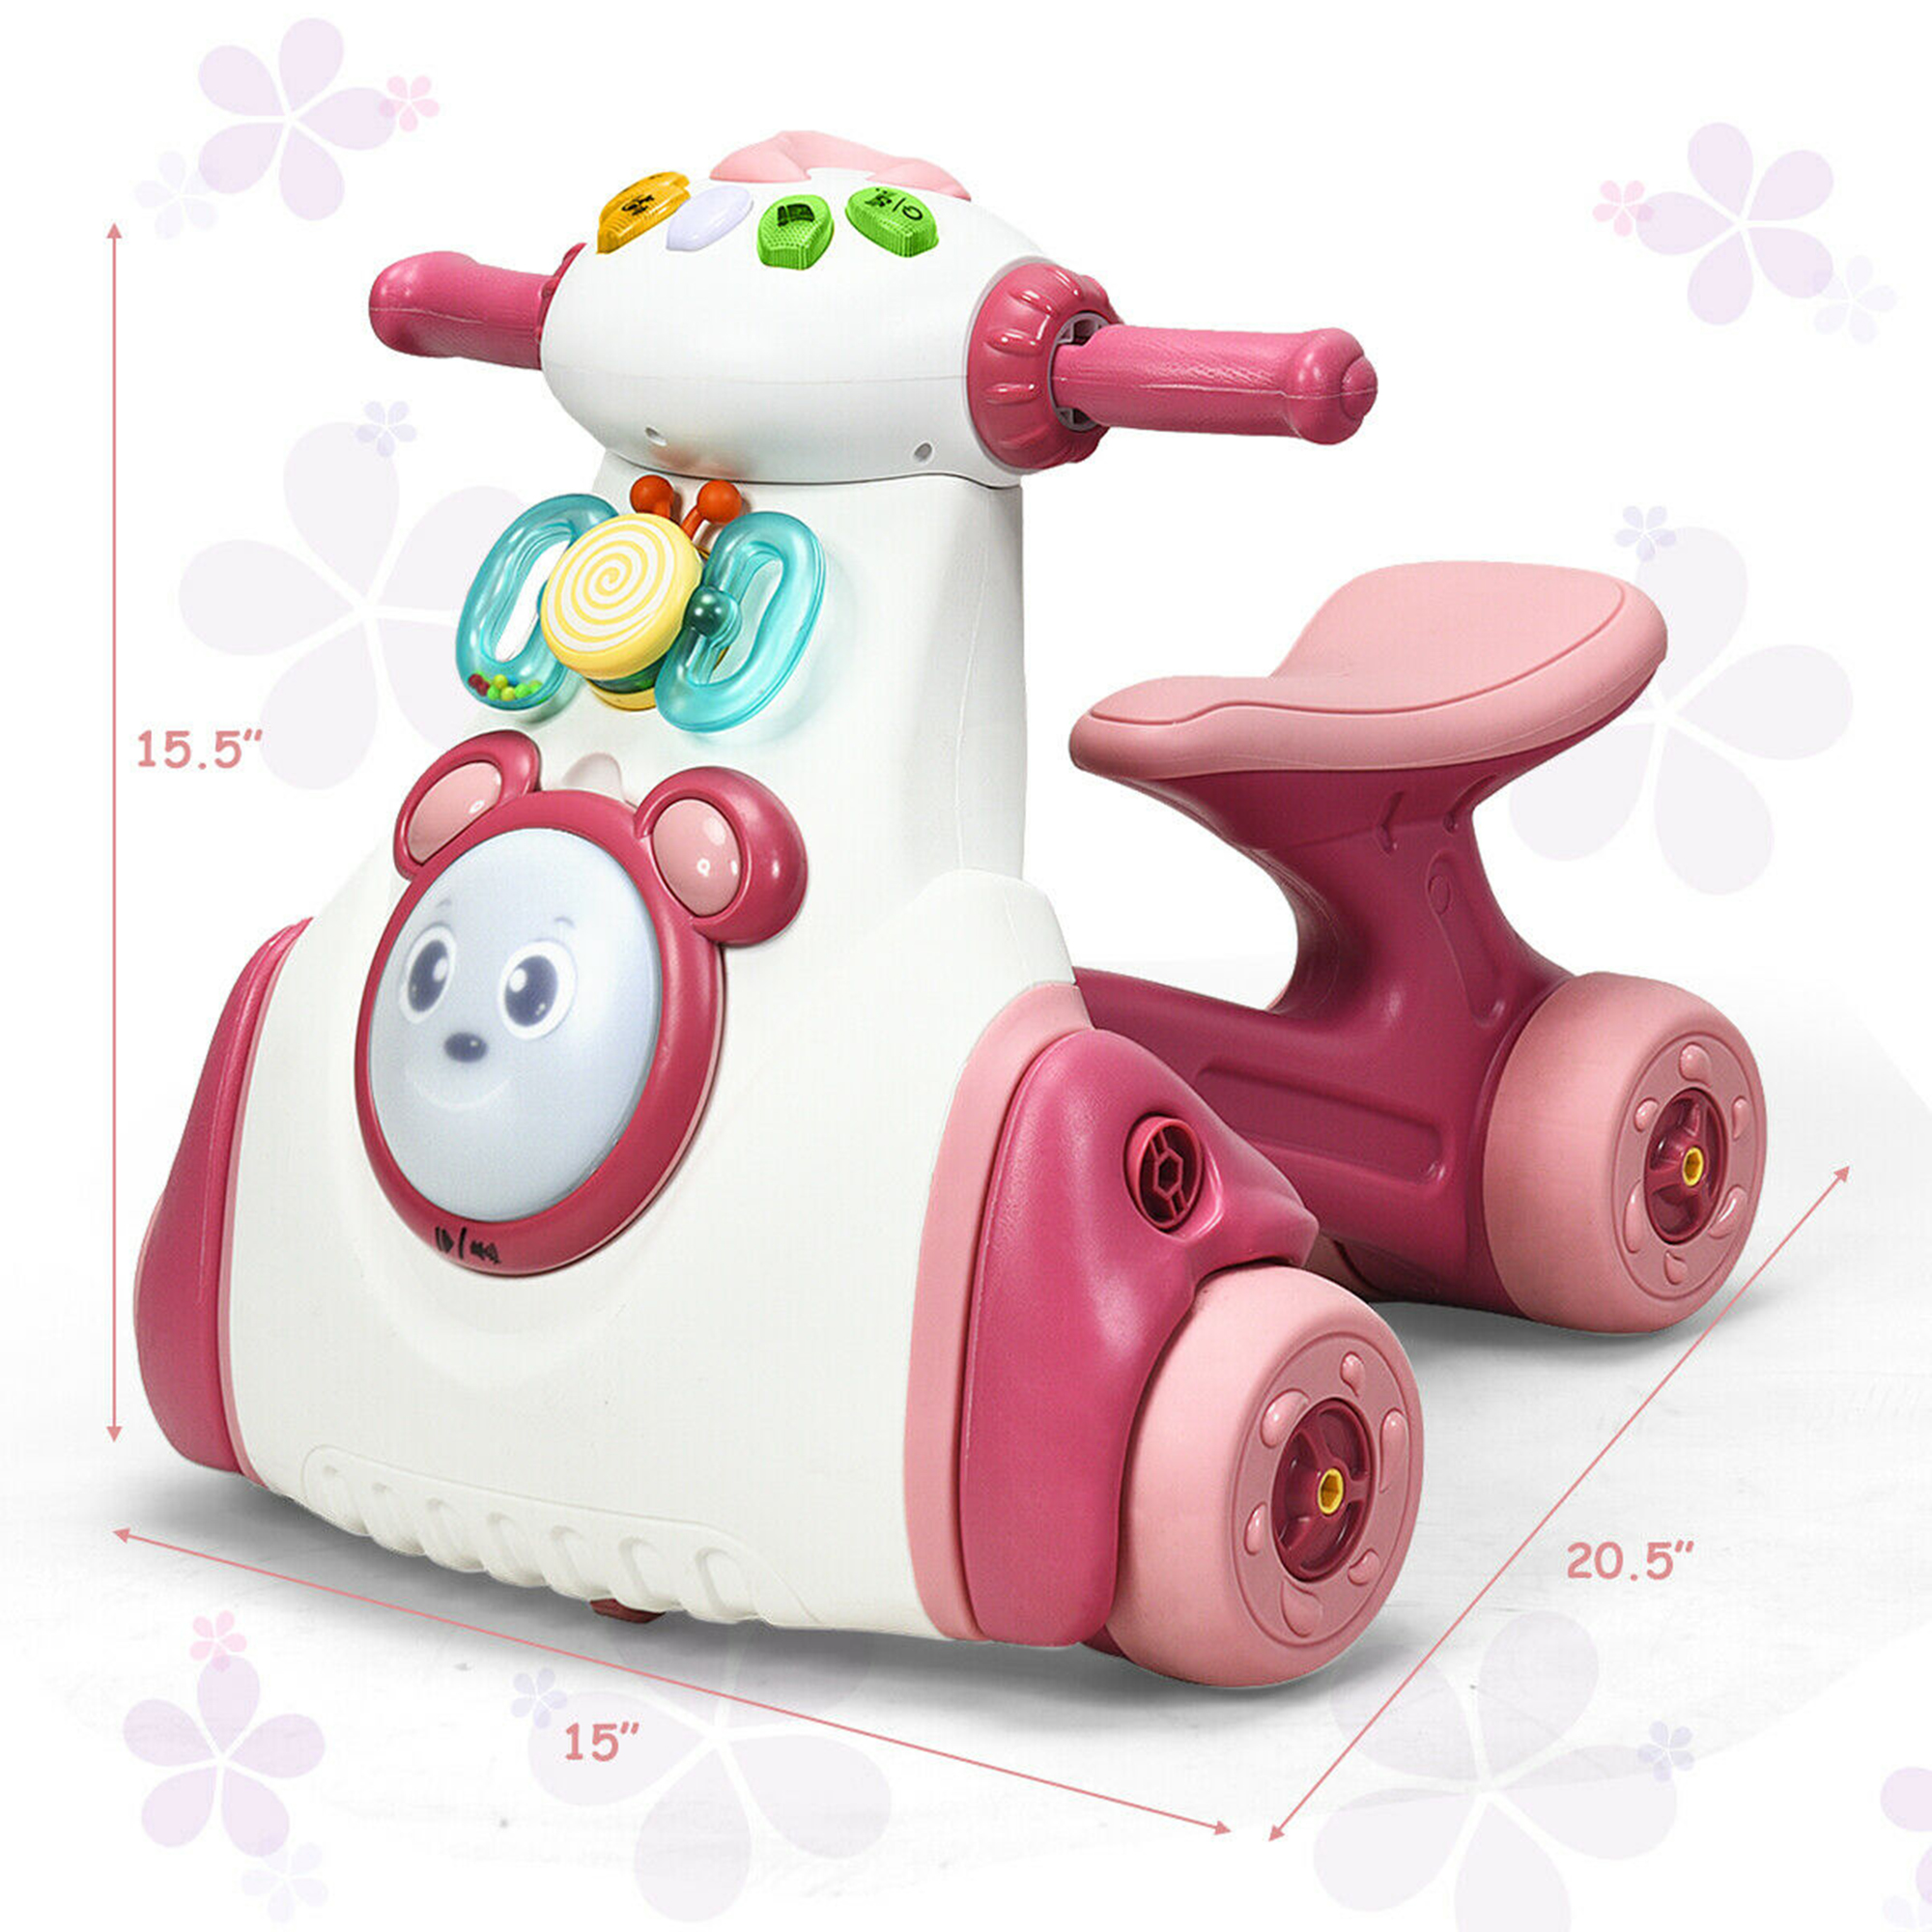 Gymax Baby Balance Bike Musical Ride Toy w/ Sensing Function & Light Toddler Walker - image 2 of 10